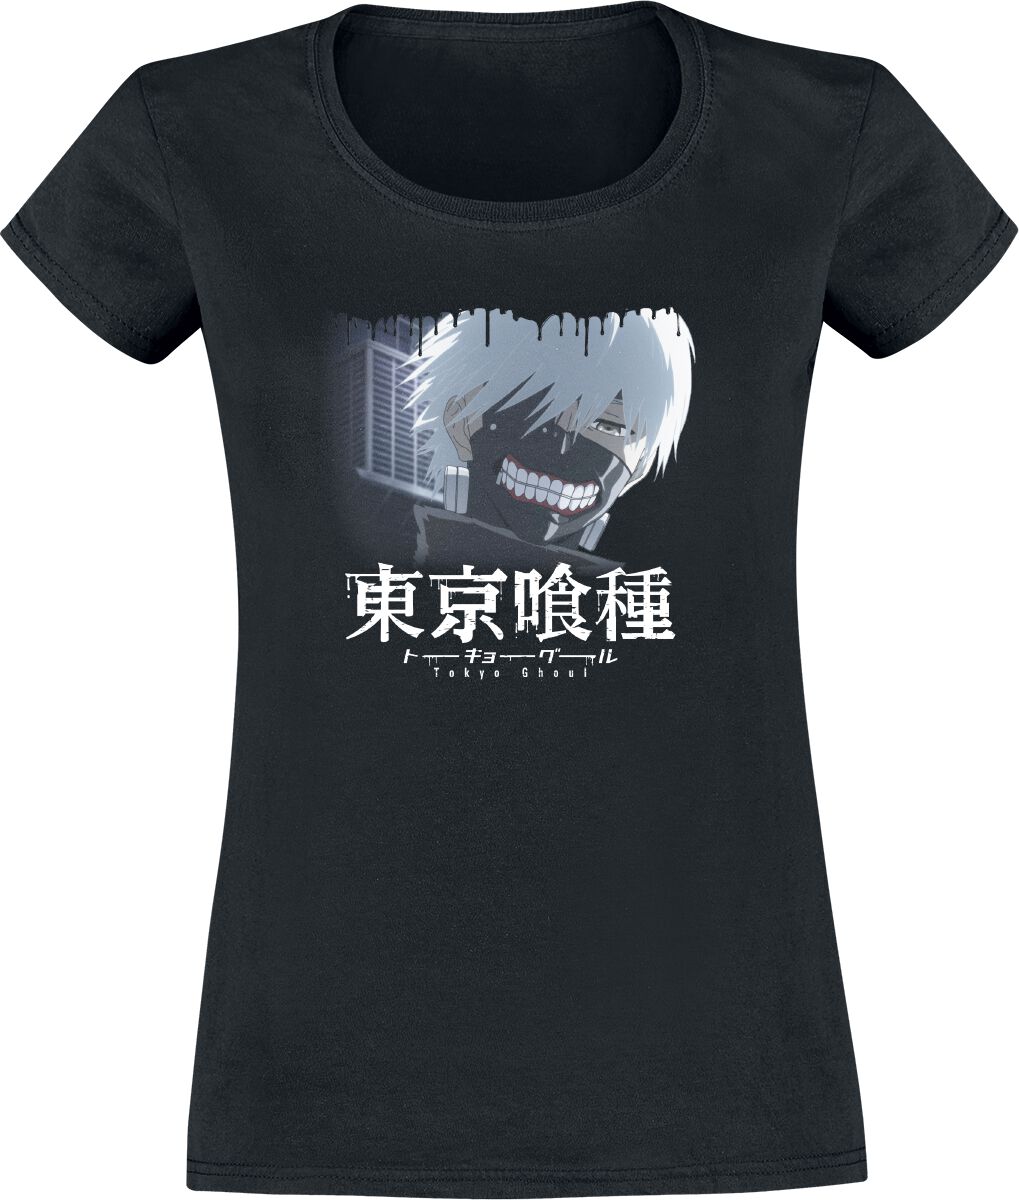 T-Shirt Manches courtes de Tokyo Ghoul - Such a Lovely Smile - S à XXL - pour Femme - noir